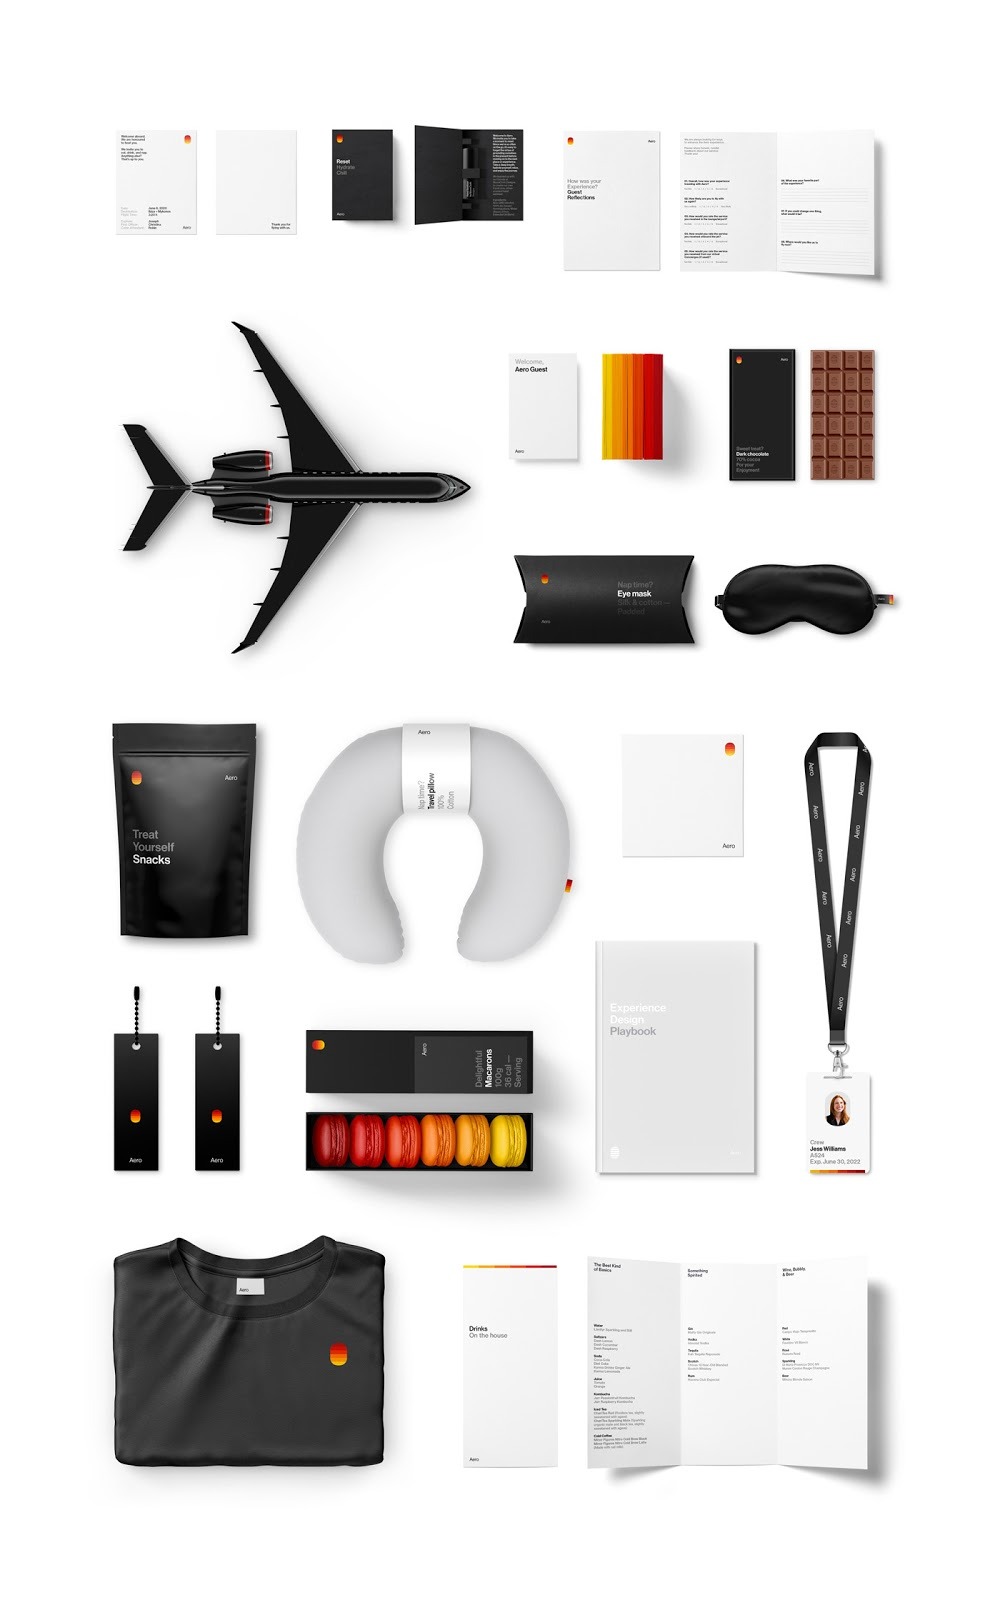 Aero私人客机服务品牌视觉设计